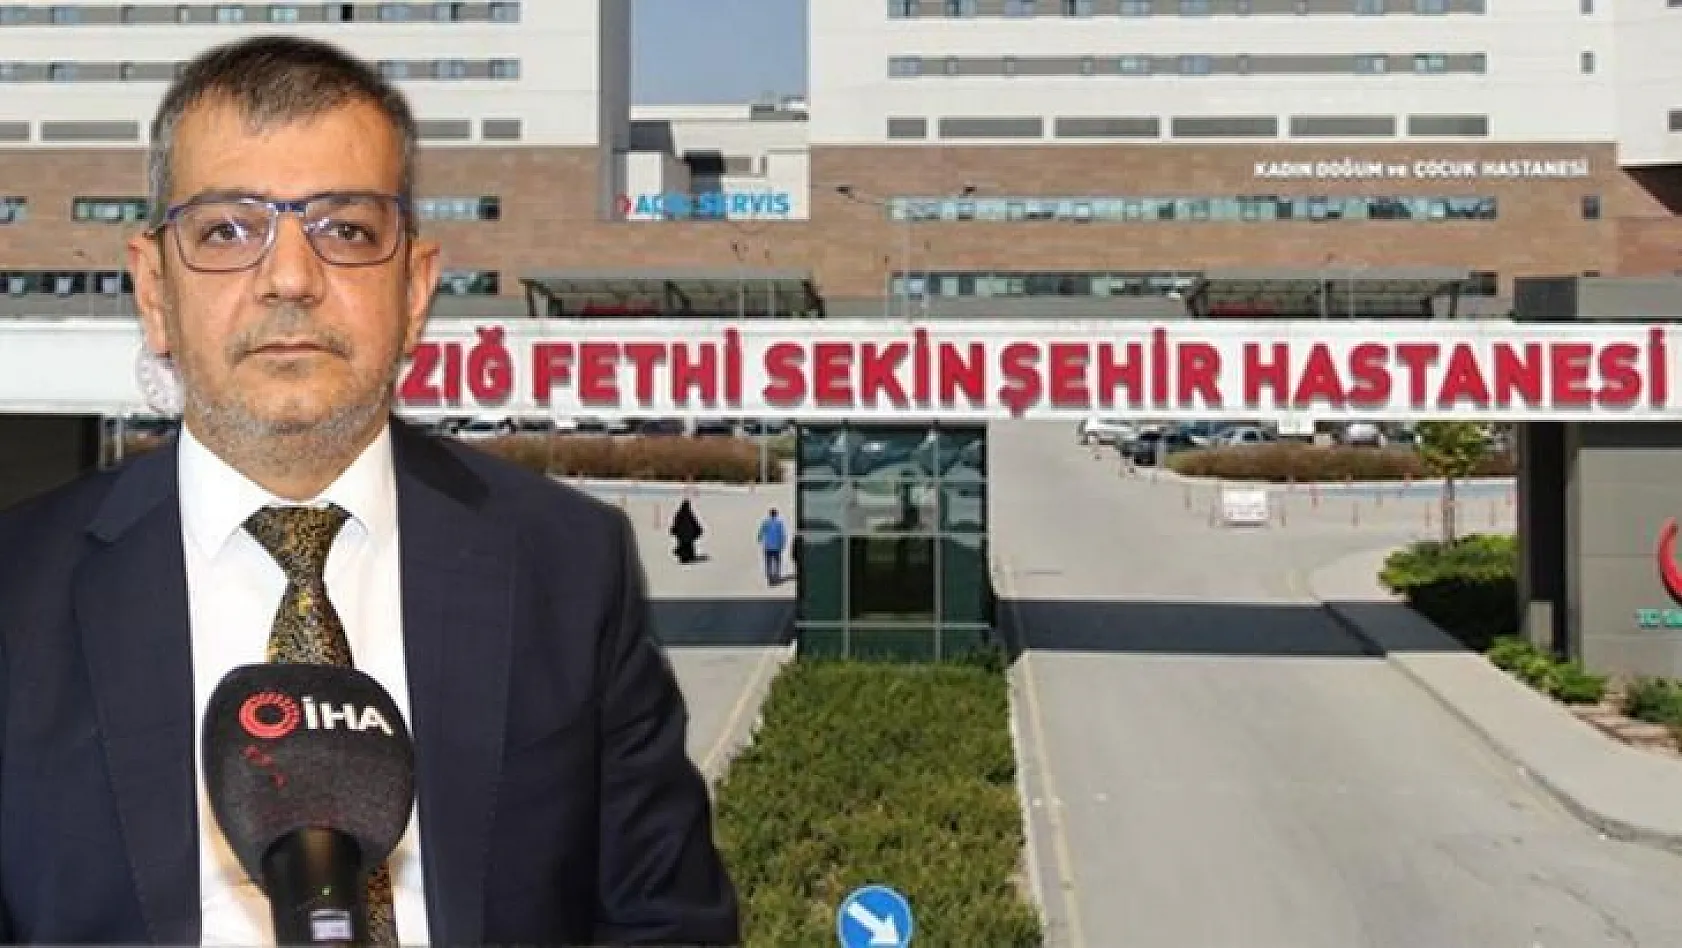 Bölgenin yükselen değeri Fethi Sekin Şehir Hastanesinde, bir yılda 1 milyon 566 bin 51 hasta tedavi edildi